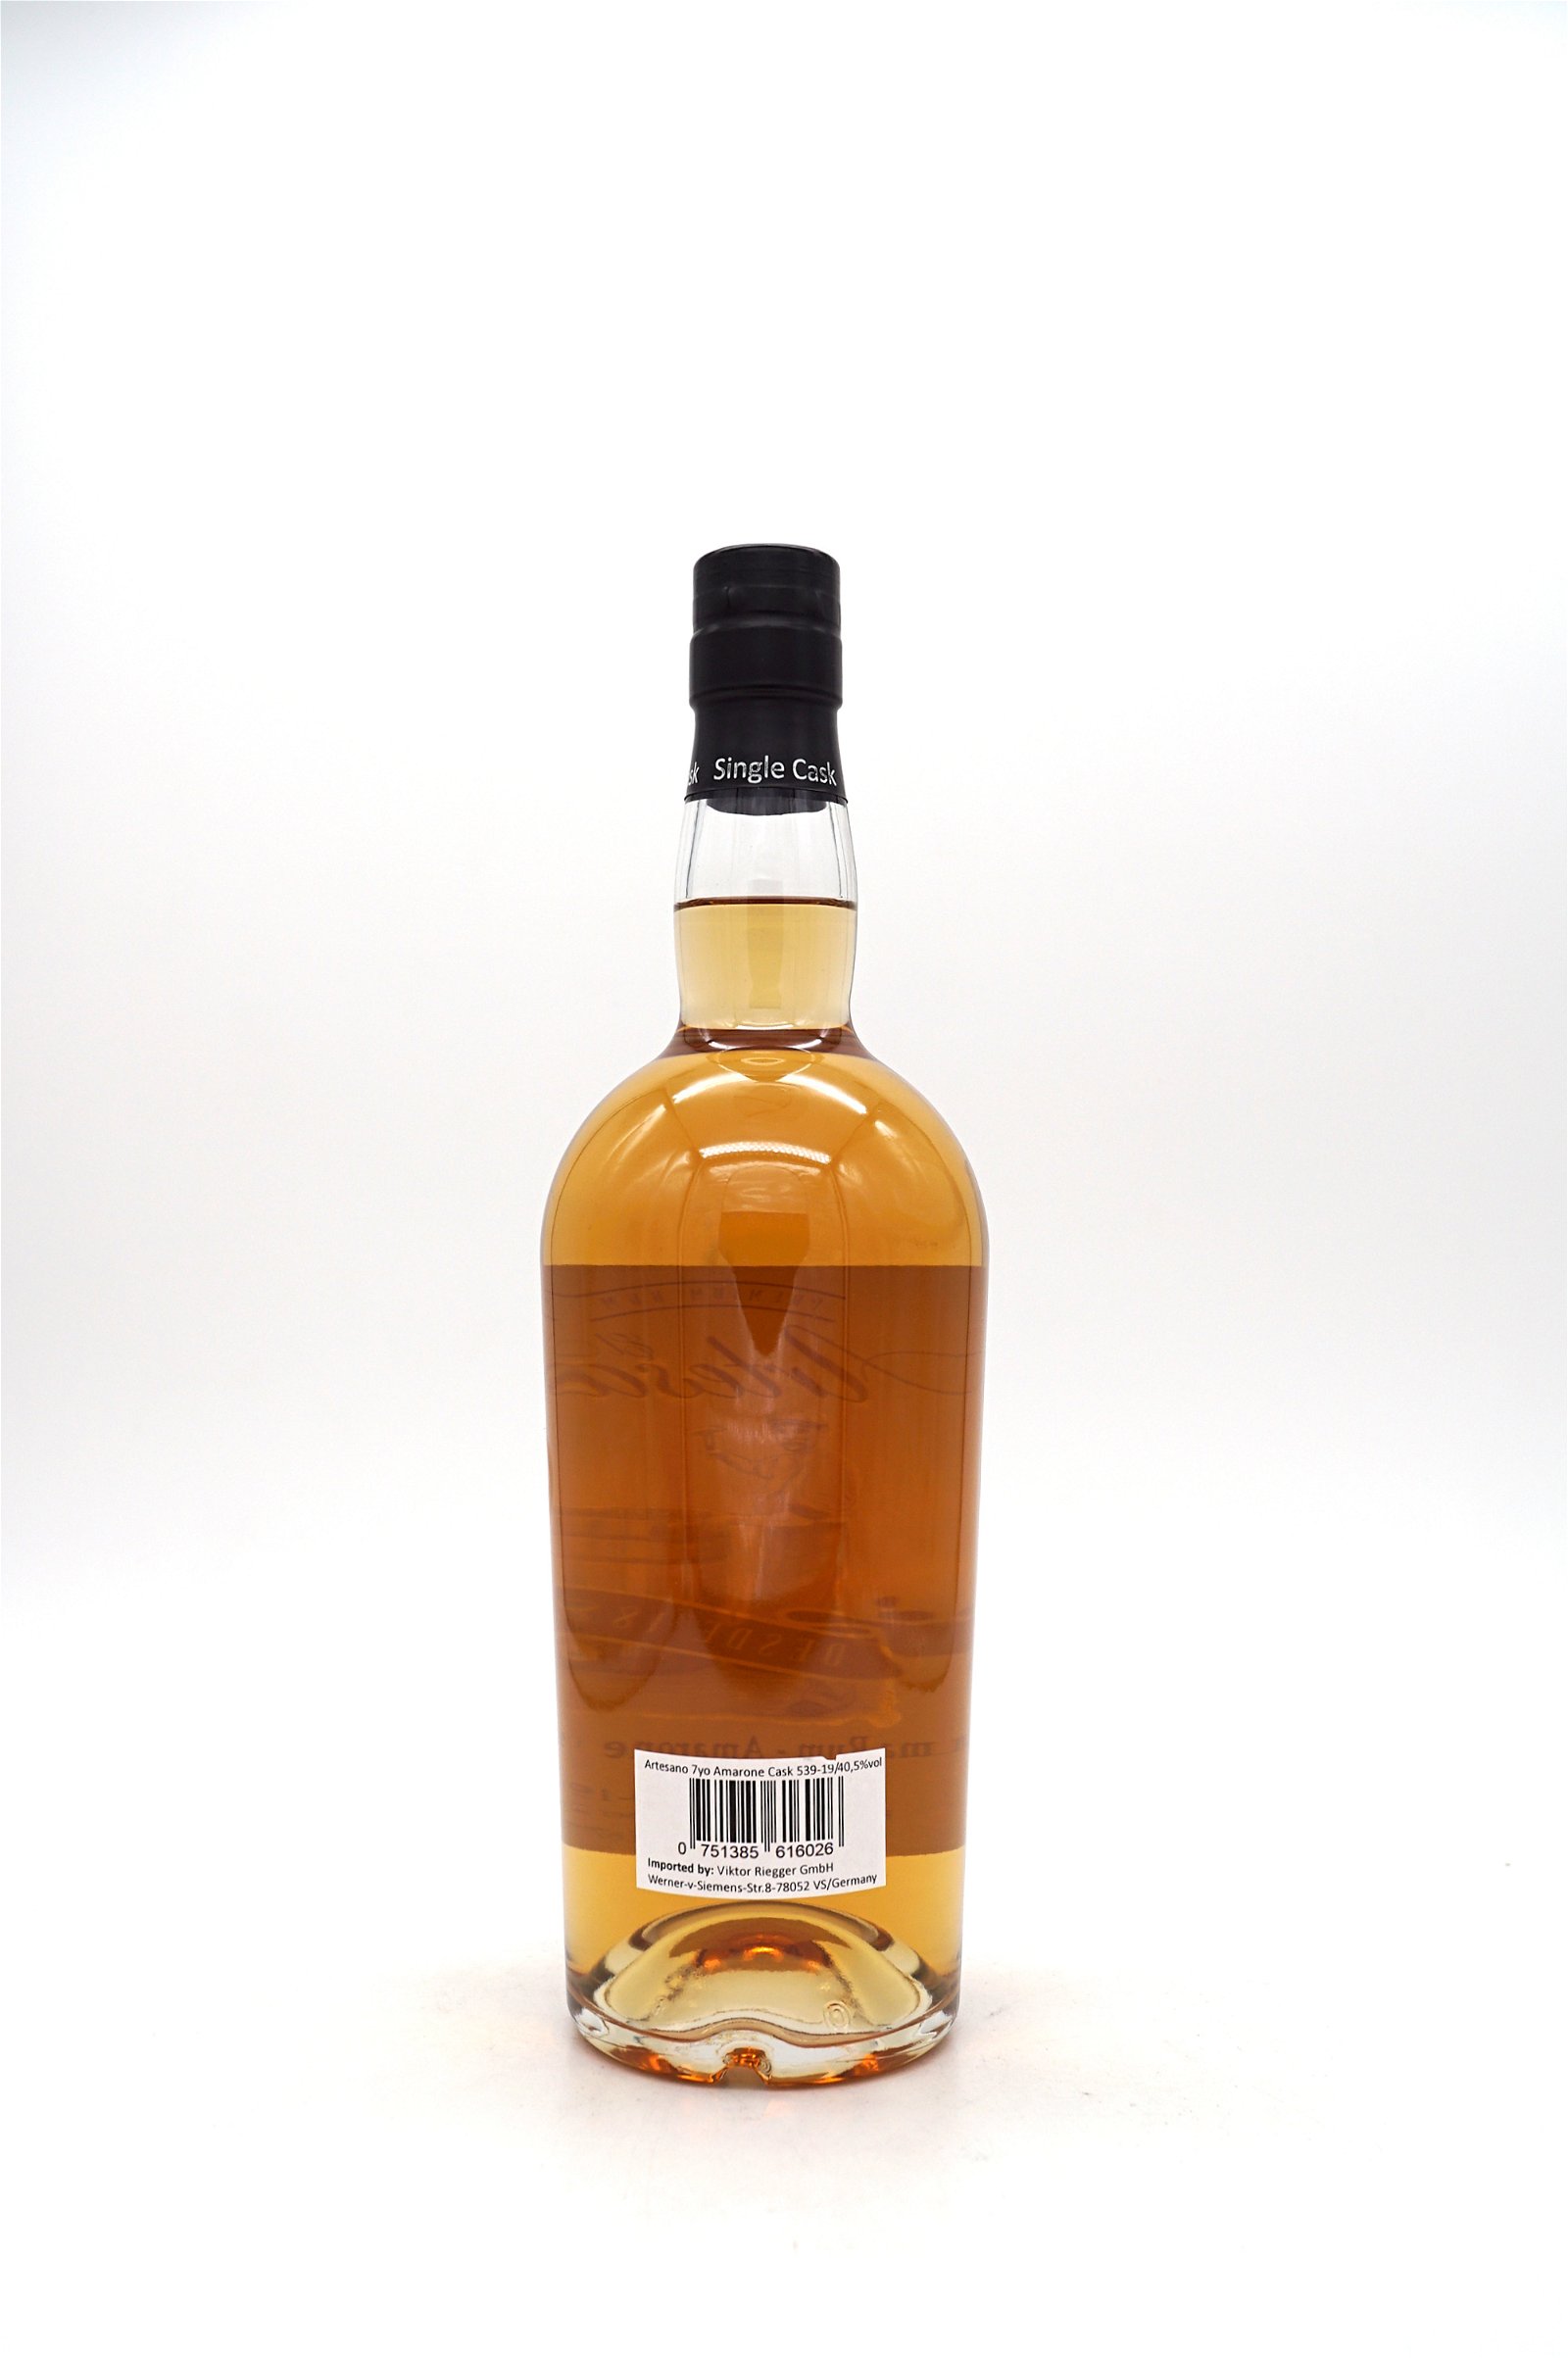 El Ron del Artesano Jahre Panama Rum Amarone Cask Finish Cask Nr. 539-19